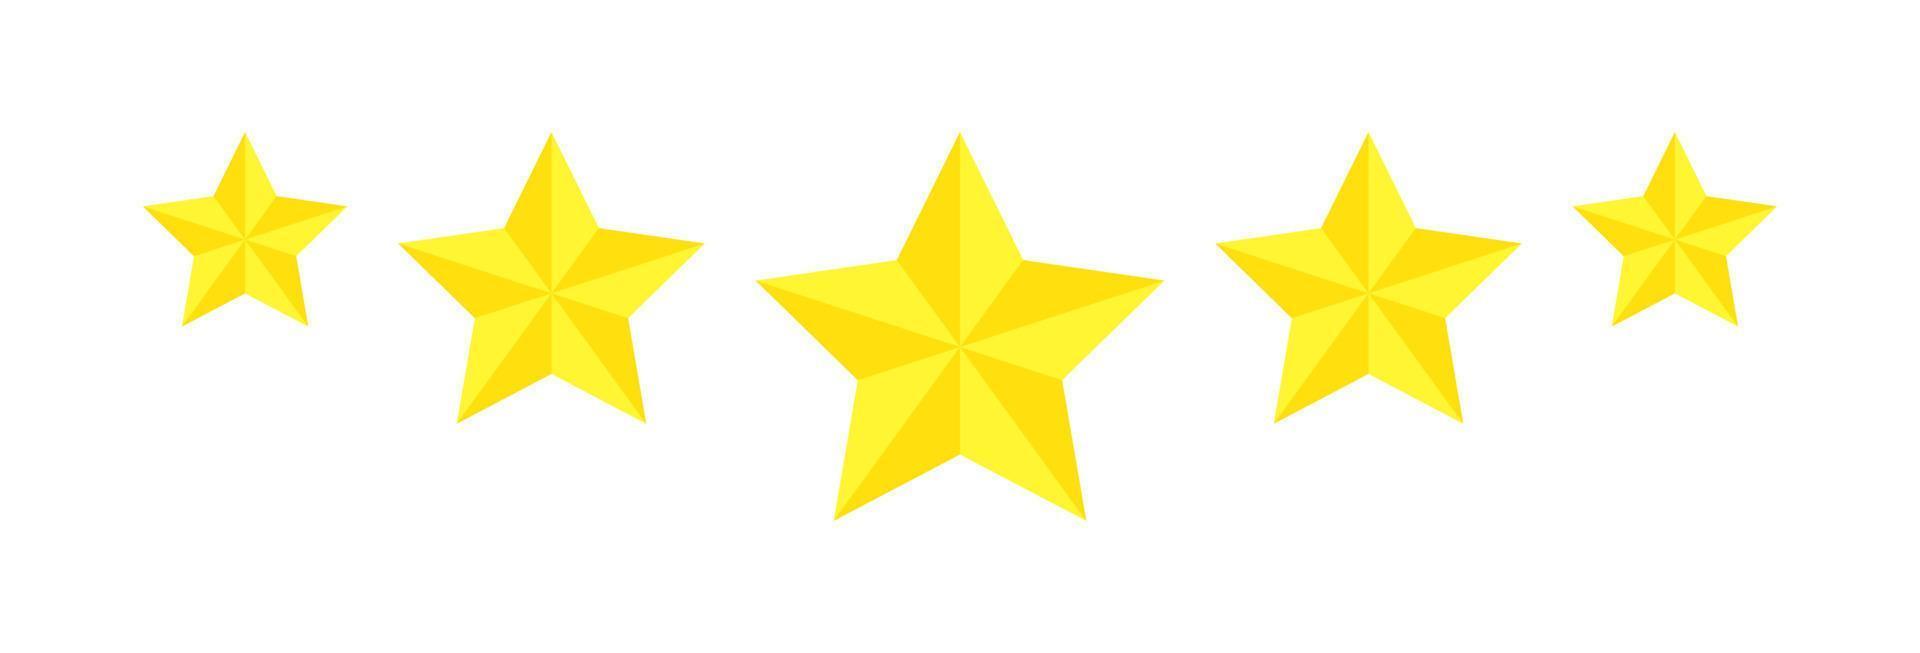 classificação de cinco estrelas, revisão de ícone plano para aplicativos e sites. adesivo amarelo de 5 estrelas isolado em um fundo branco. para classificações de clientes ou níveis de produtos alimentícios, serviços, hotéis ou restaurantes. vetor